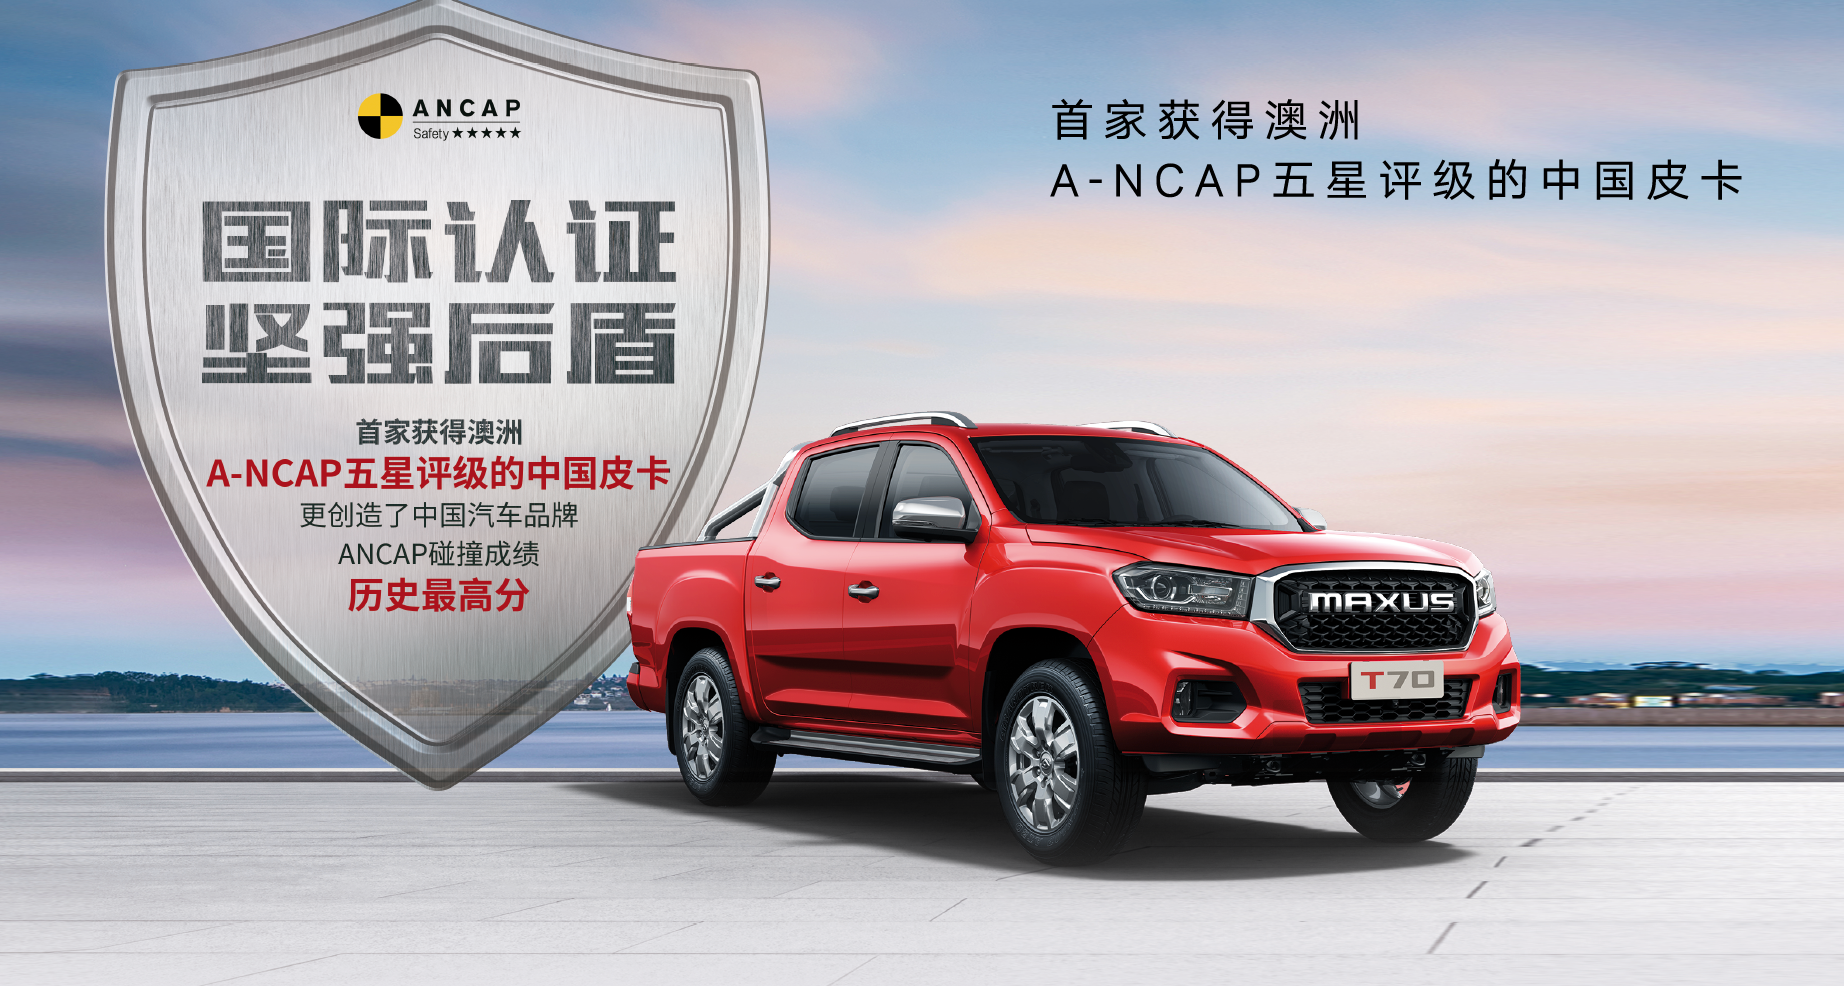 A-NCAP五星评级的中国皮卡